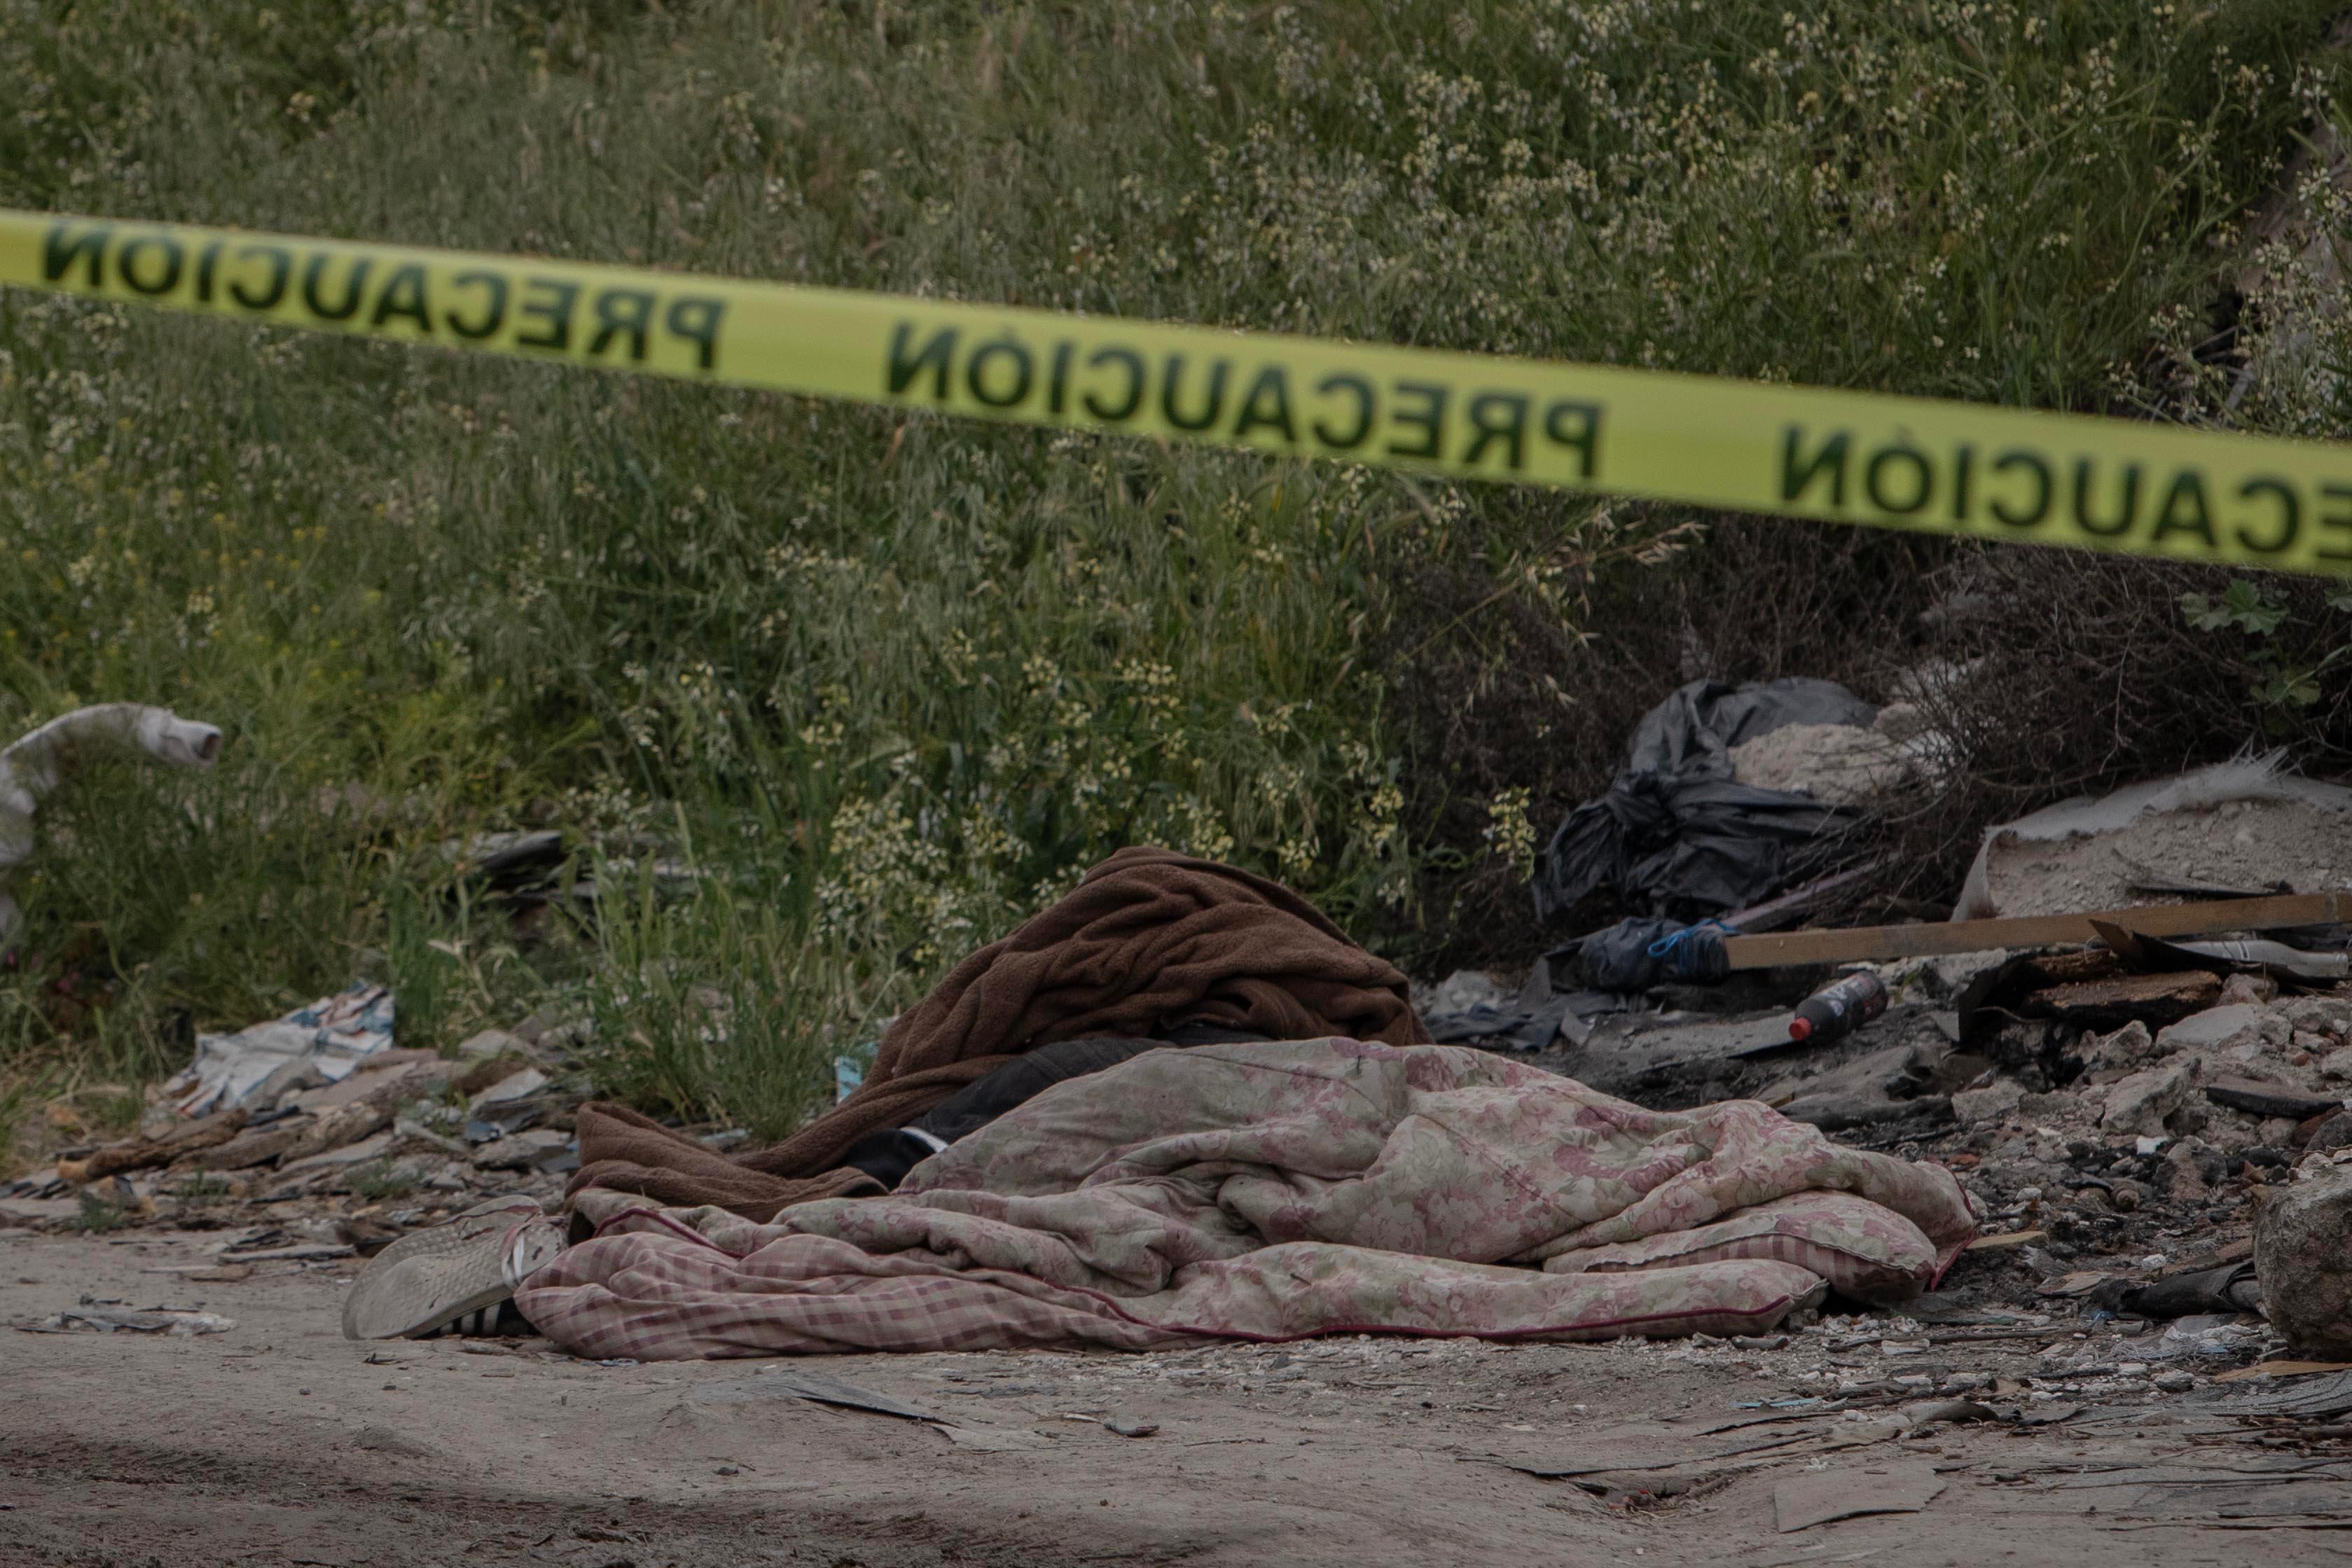 [VIDEO] Abandonan cuerpo encobijado en lote baldío: Tijuana